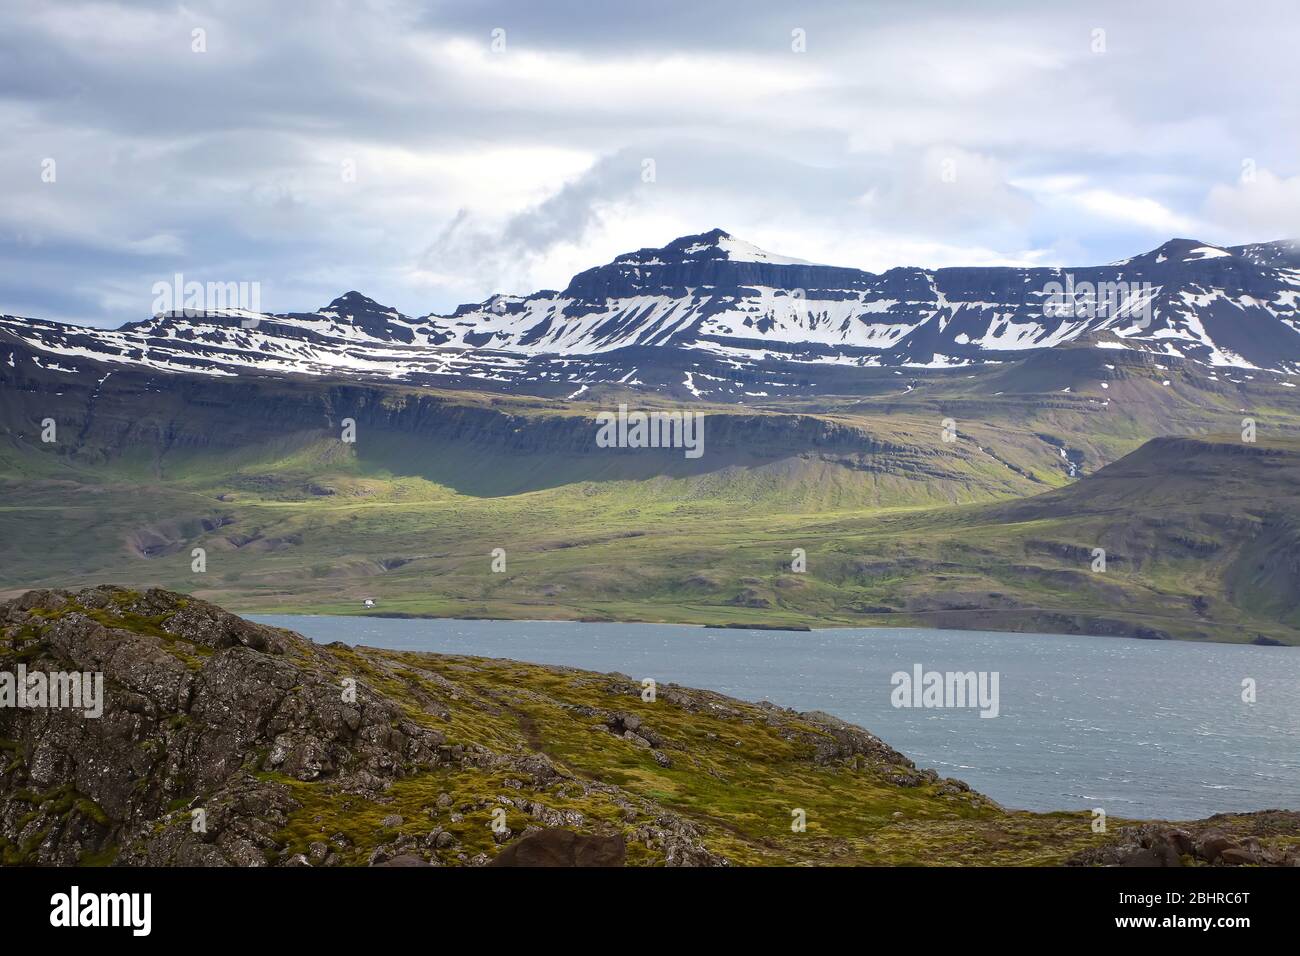 La penisola di Holmanes e la riserva naturale ospitano una natura e un paesaggio diversi e belli. Eskifjordur, Islanda orientale. Foto Stock